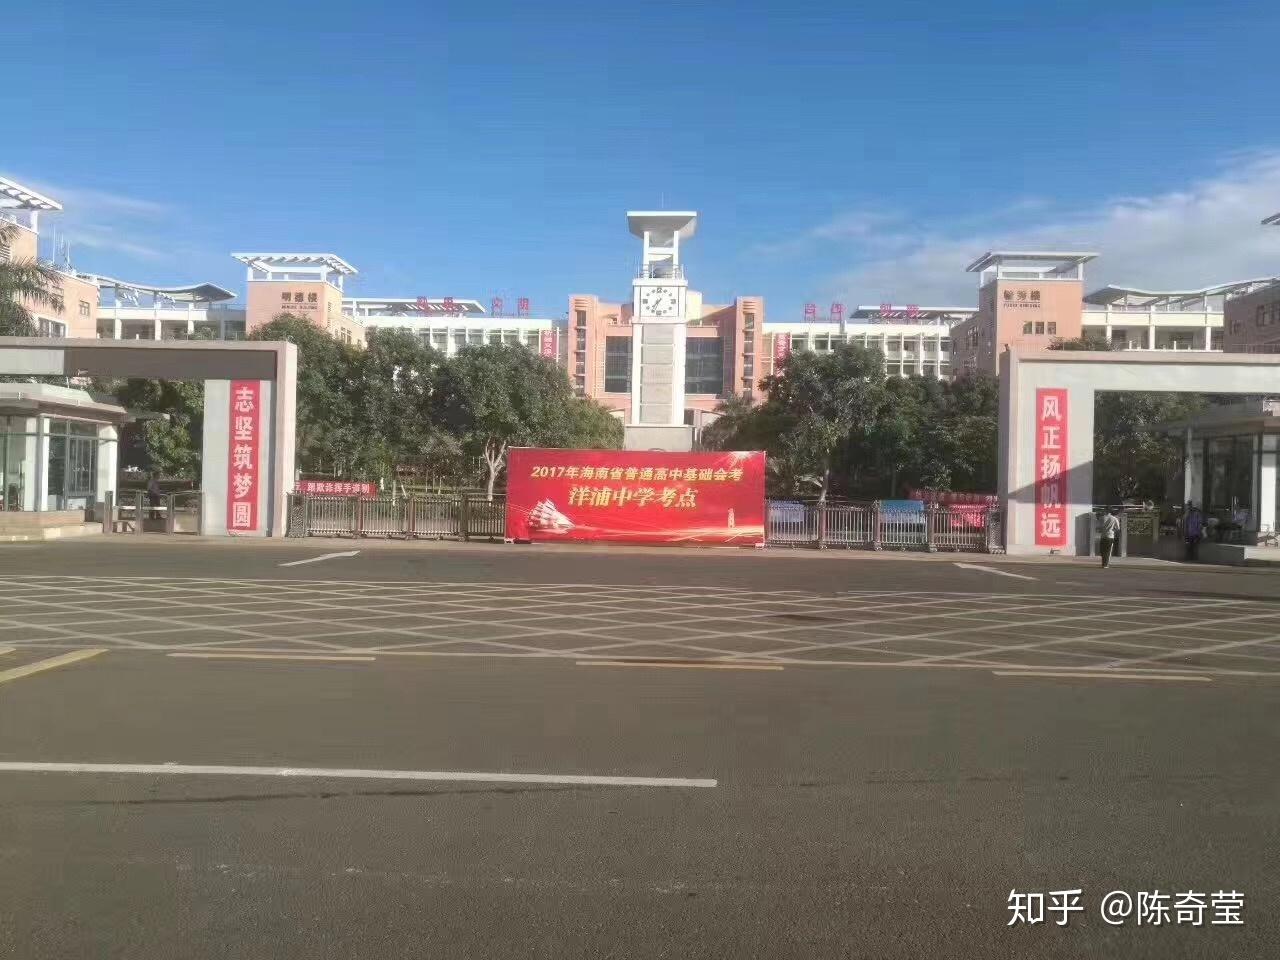 海南省洋浦中学是洋浦经济开发区唯一一所公办完全中学,为海南省一级